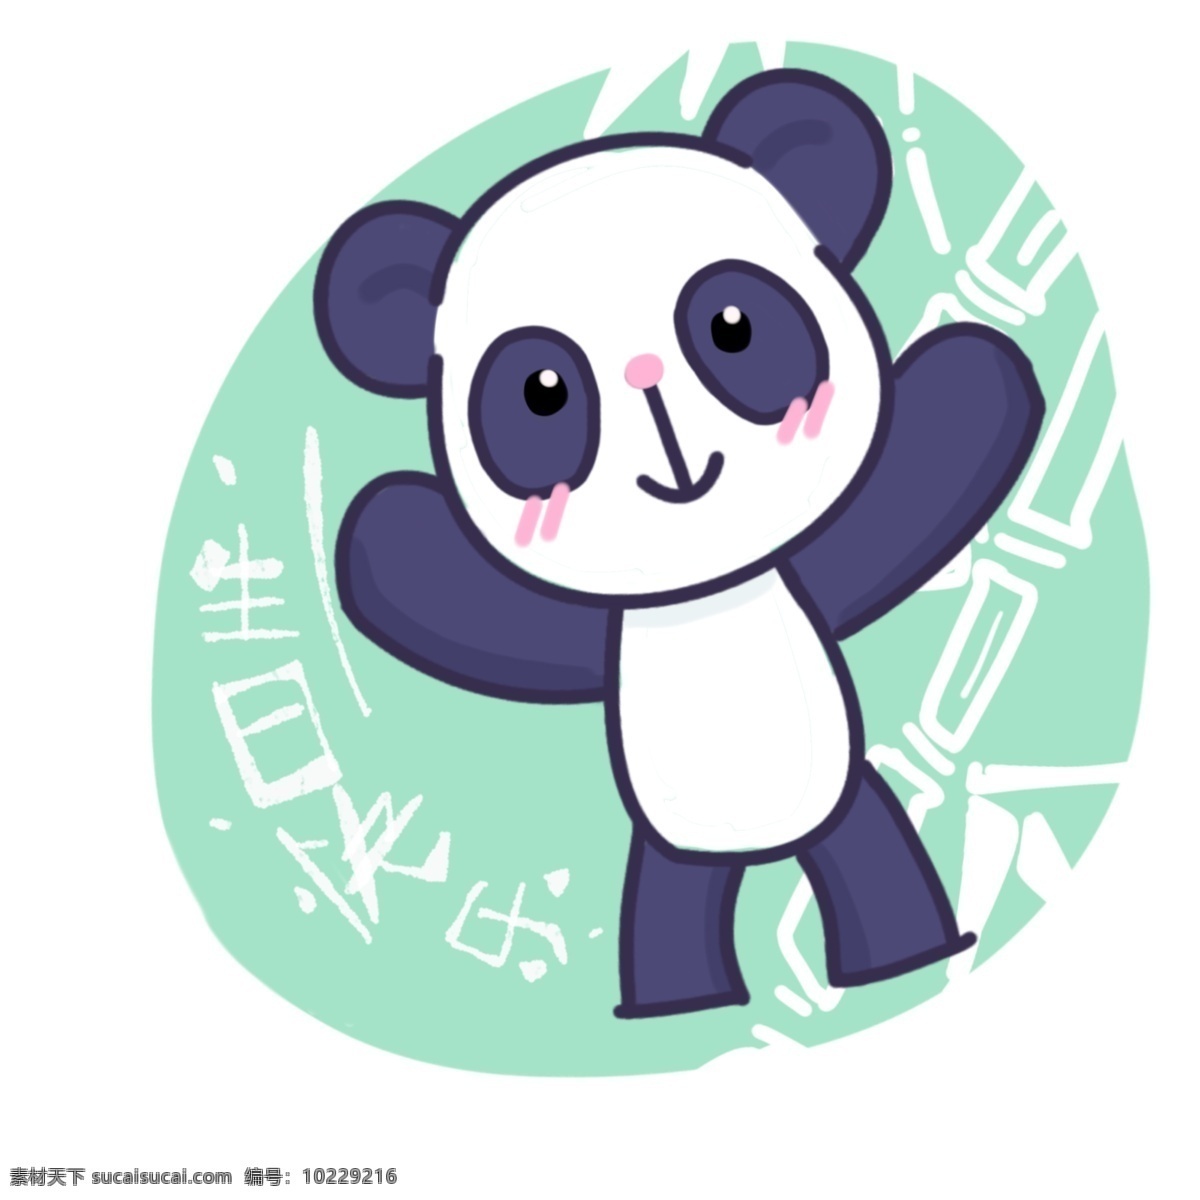 可爱 熊猫 送 生日祝福 动物 幅度 生日快乐